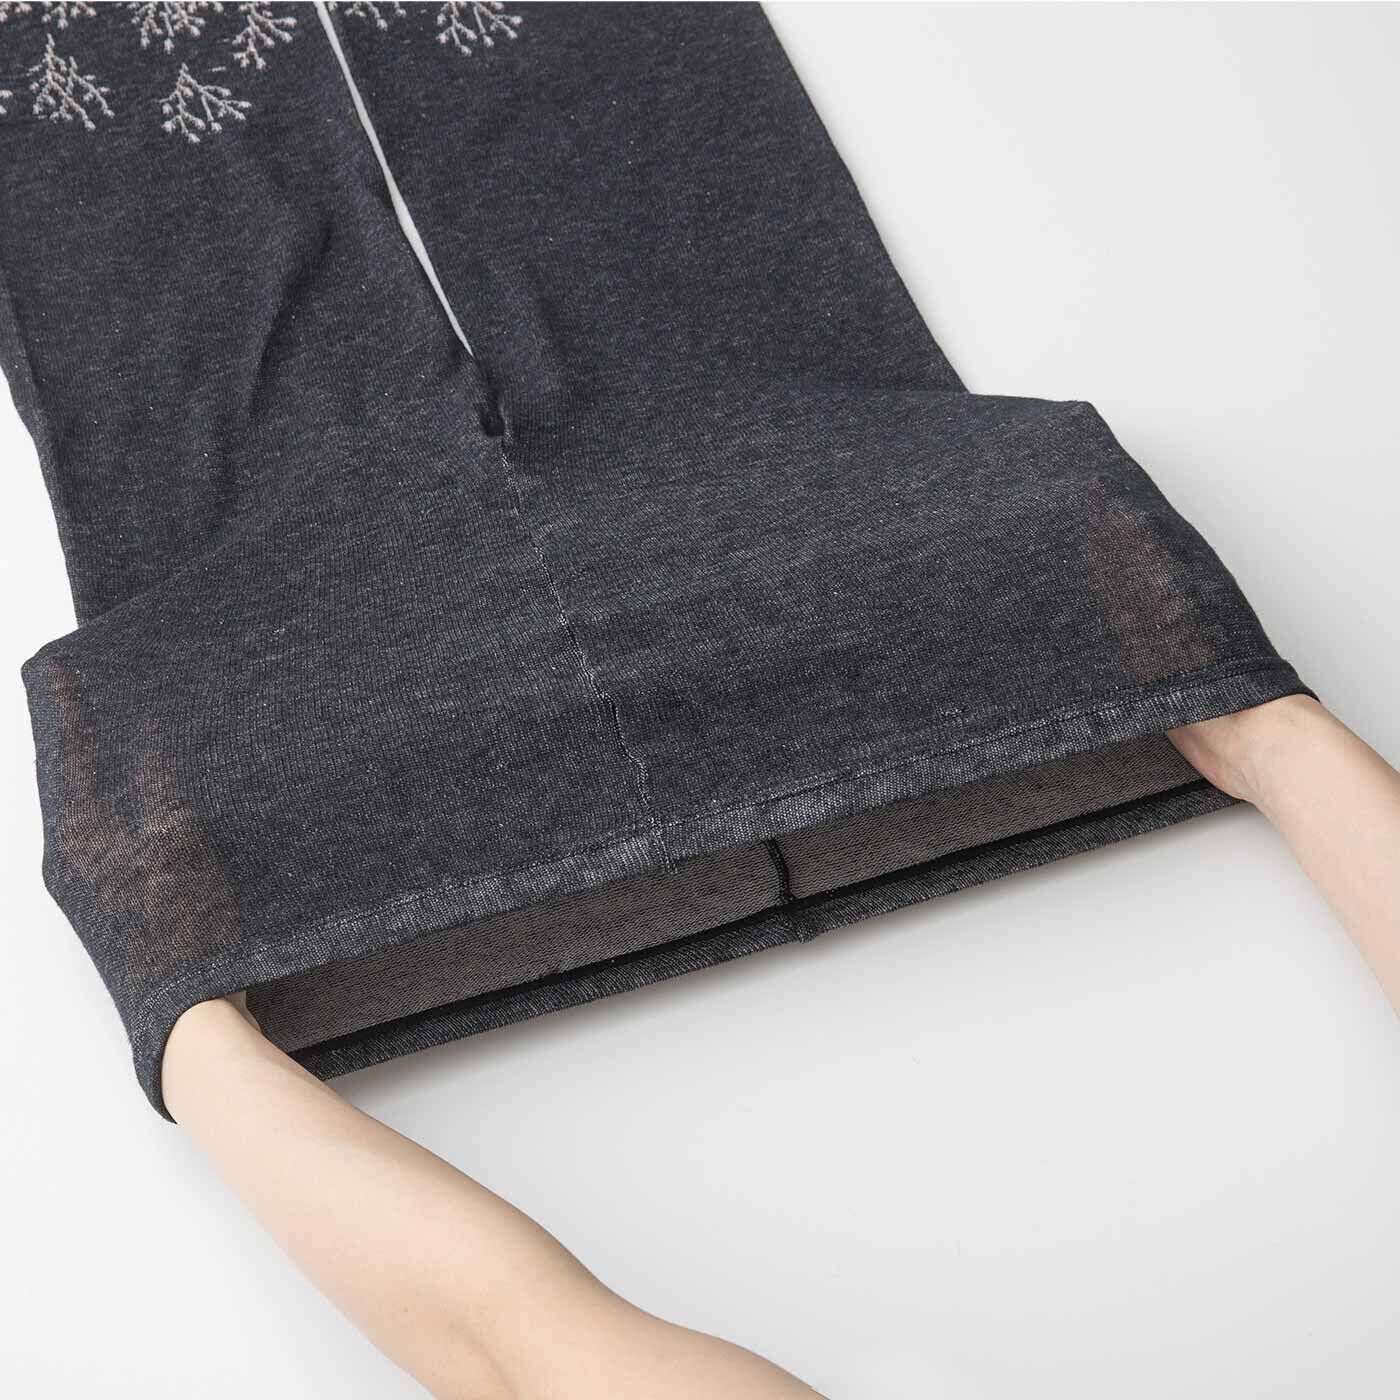 Real Stock|ラミプリュス　透かし草花模様のコットンリネン ゆる編みレギンスパンツ〈ブラック〉|ぐーんと伸びてからだにフィットします。